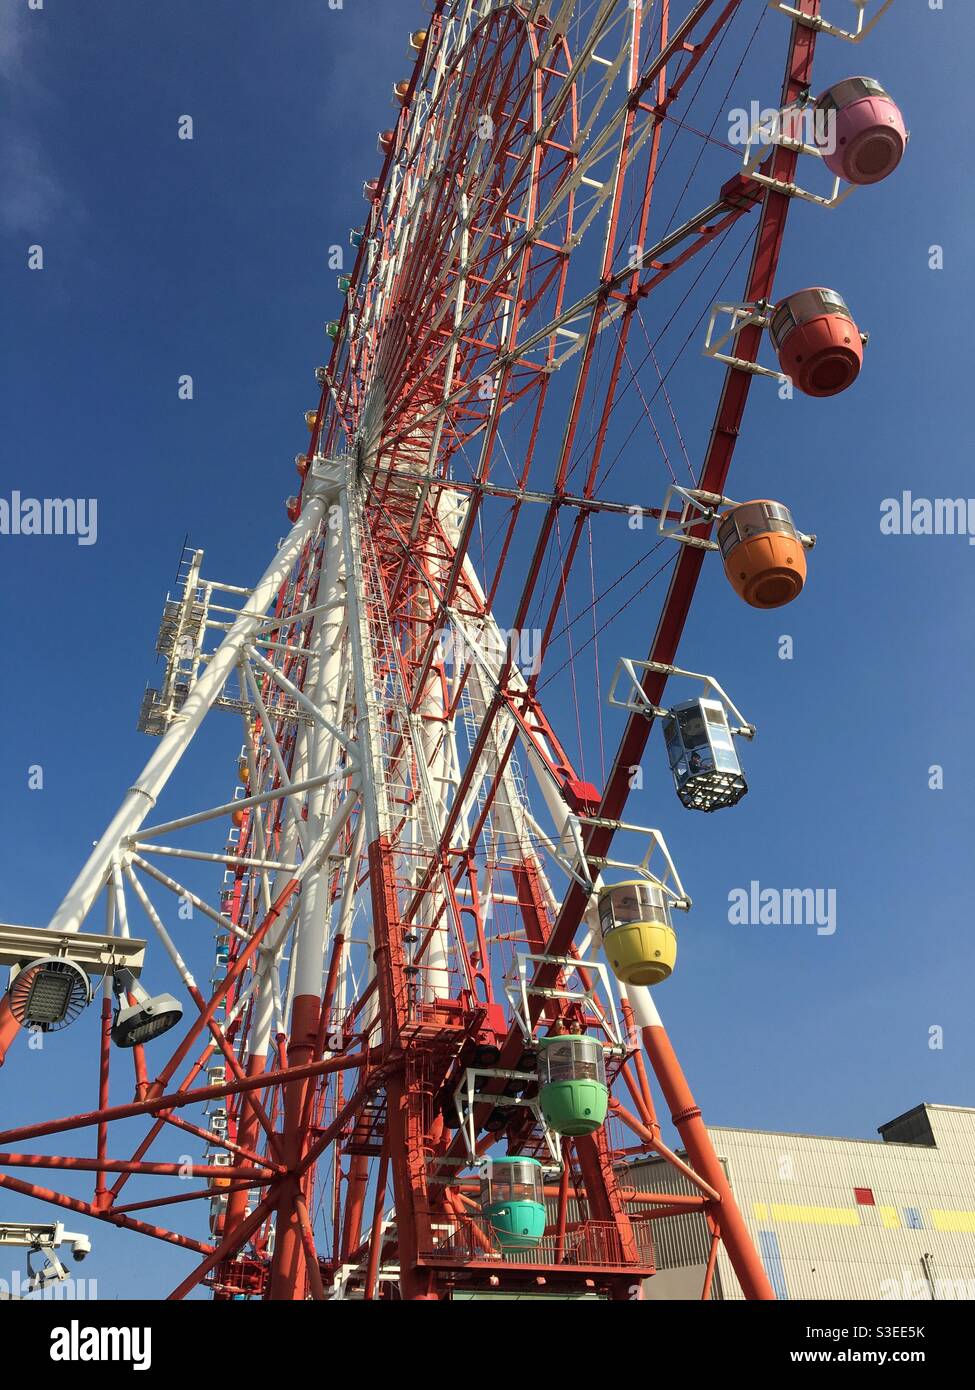 Ferris wheel in clear blue sky Stock Photo